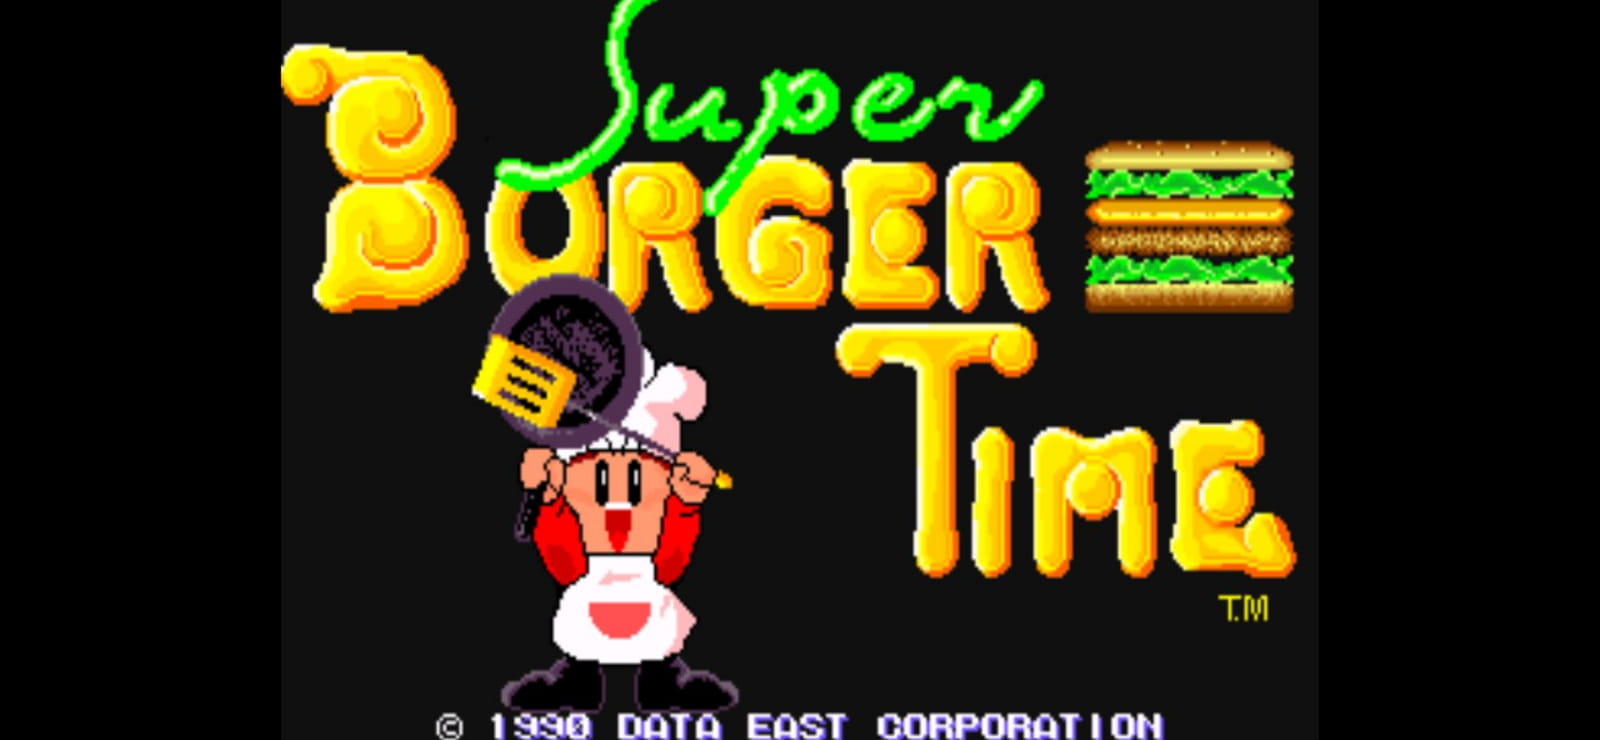 Retro Classix: Super BurgerTime